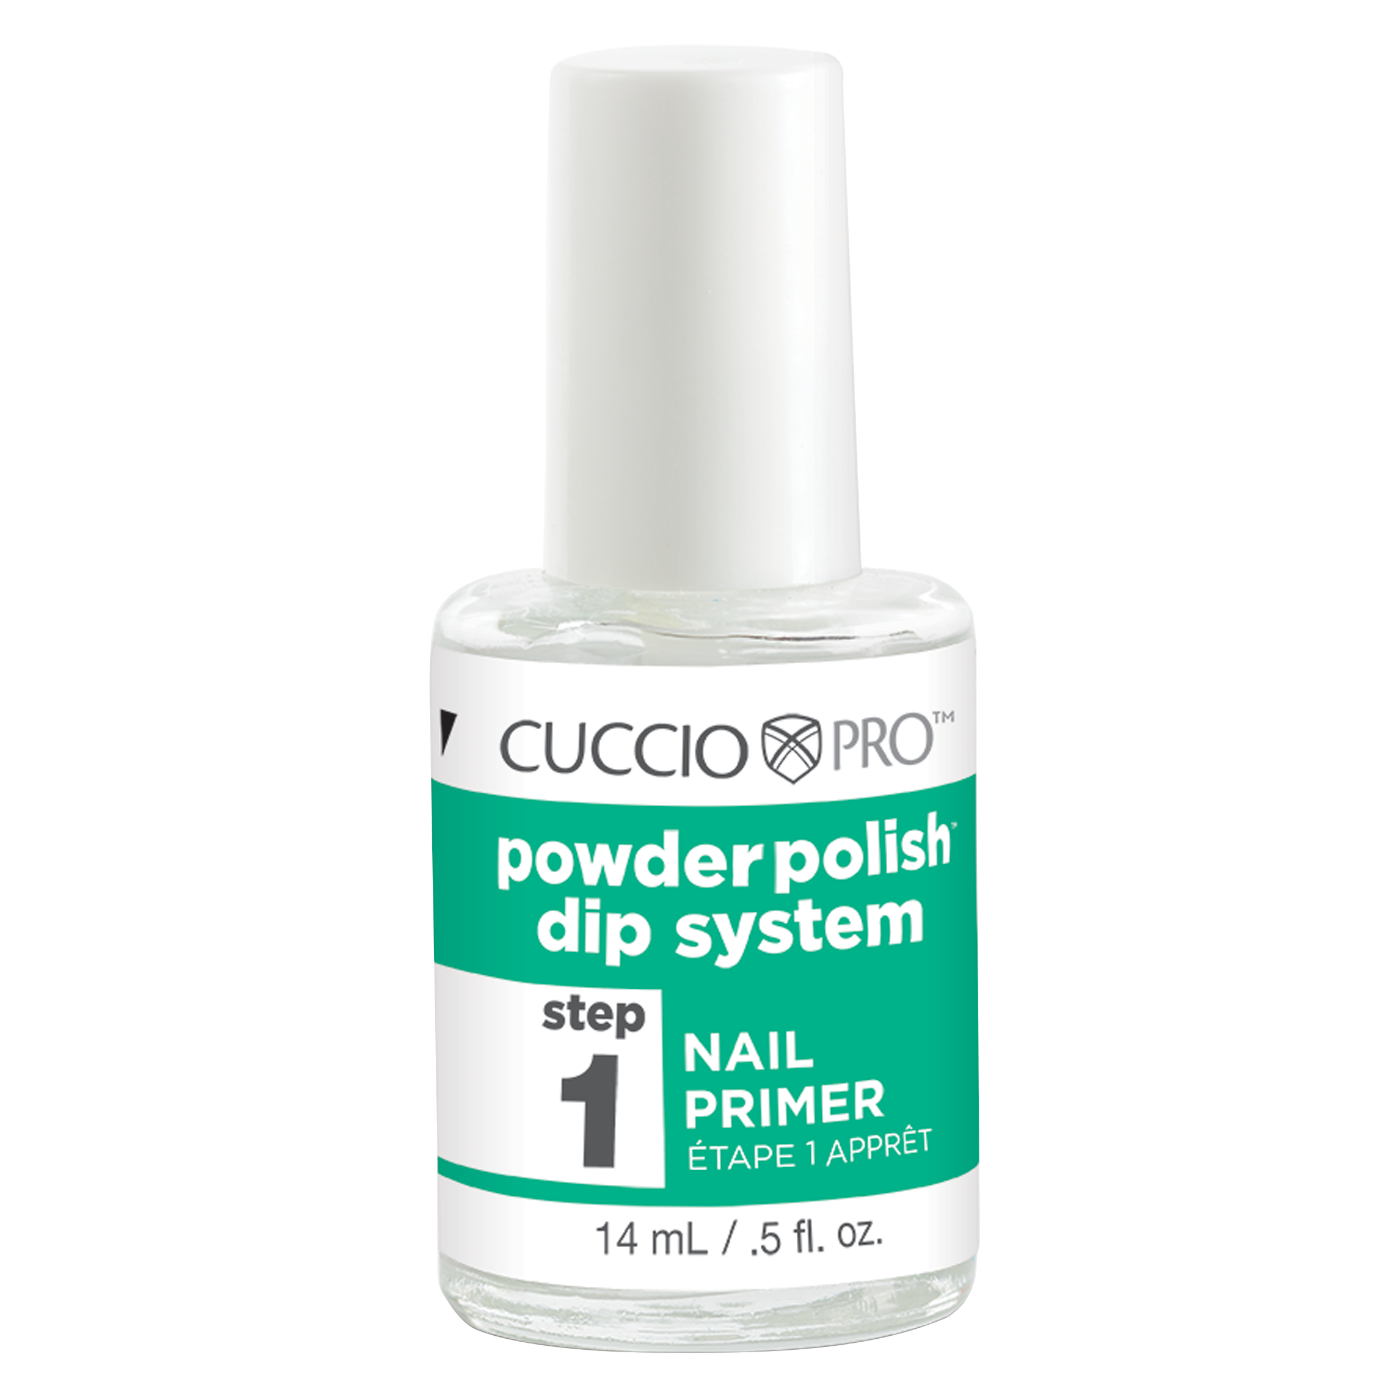 Powder Polish Dip System Nail Primer